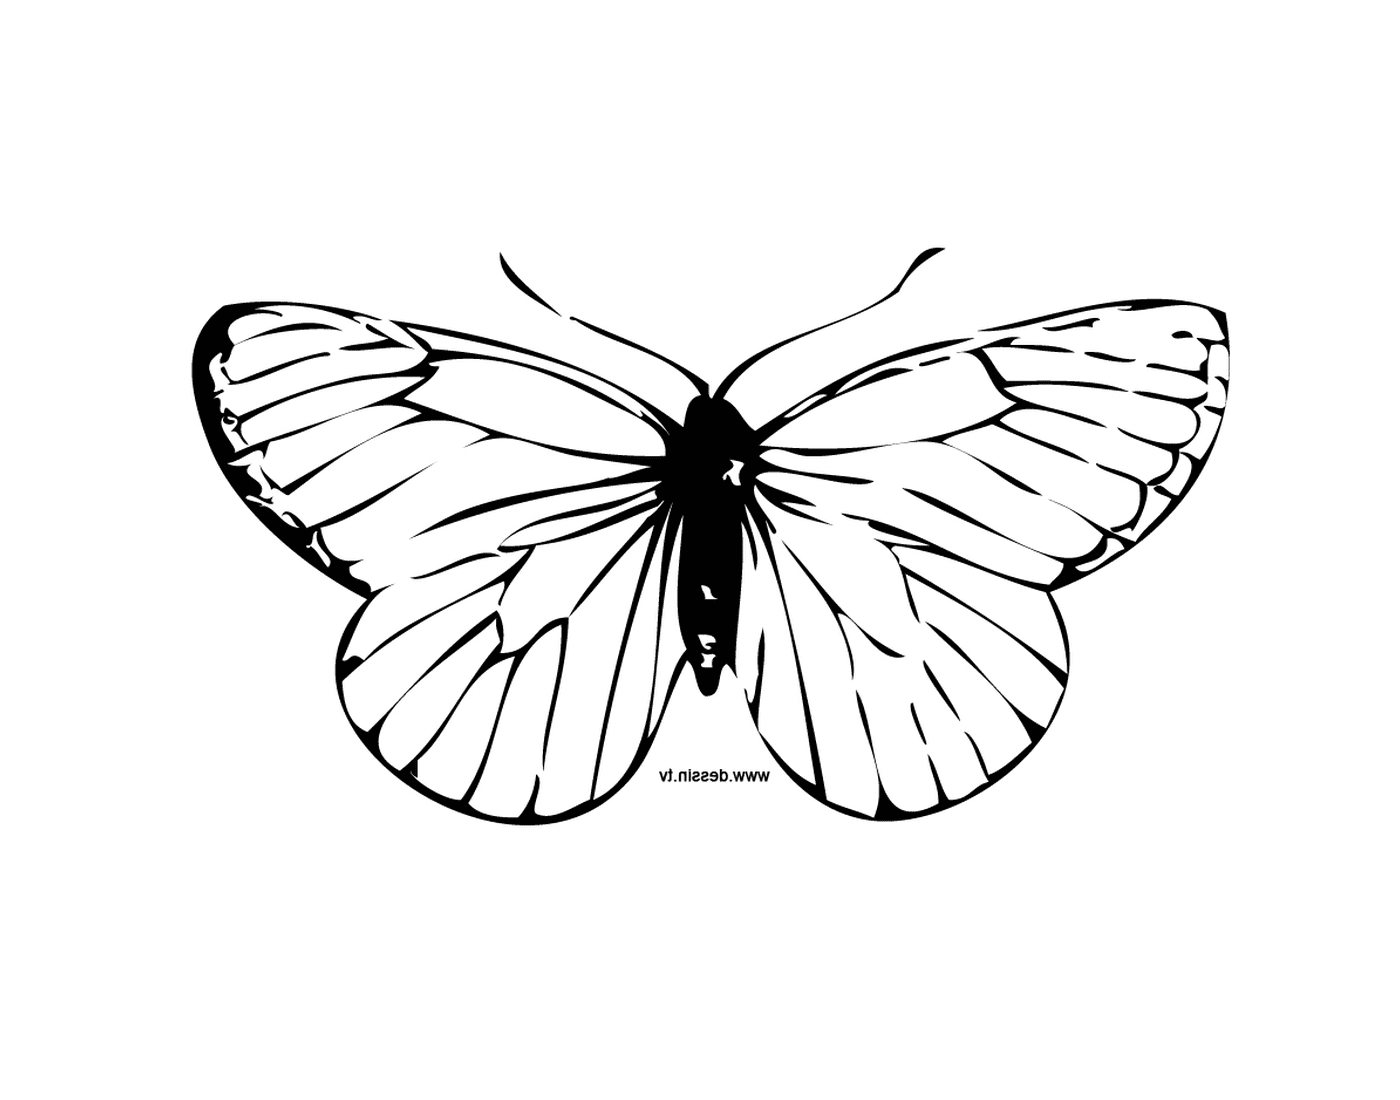  Affascinante farfalla con motivi unici 